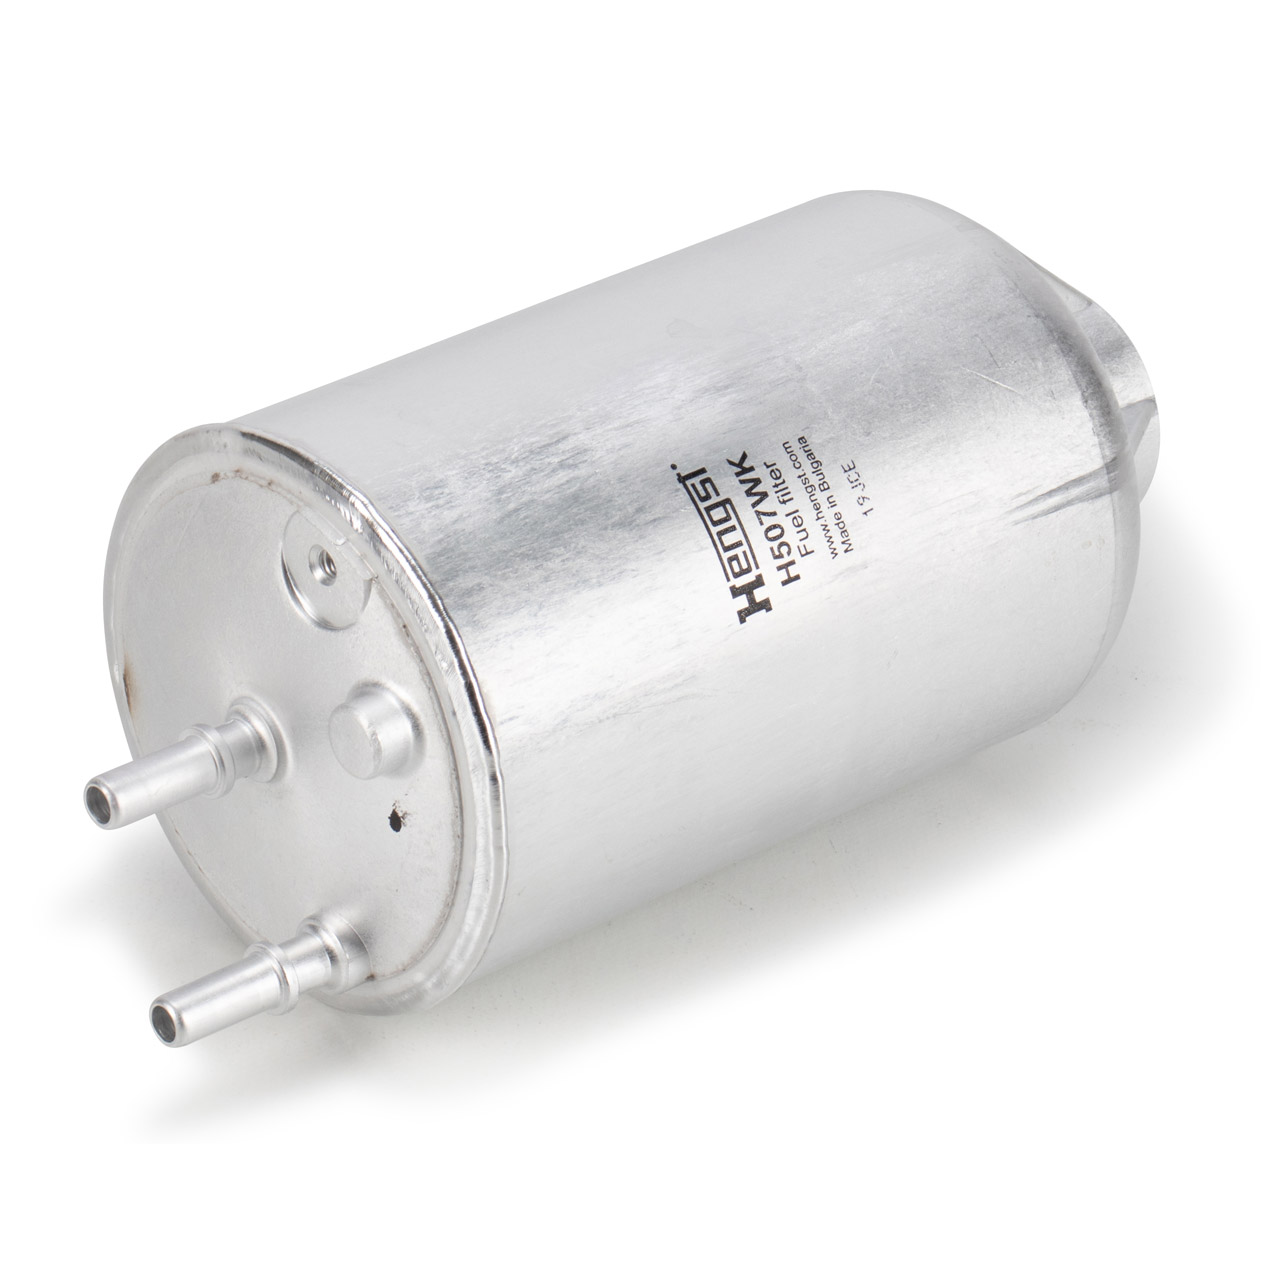 HobbyTech Kraftstoff-Filter Aluminium inkl. Halterung - grün (HT-5175, 7,70  €